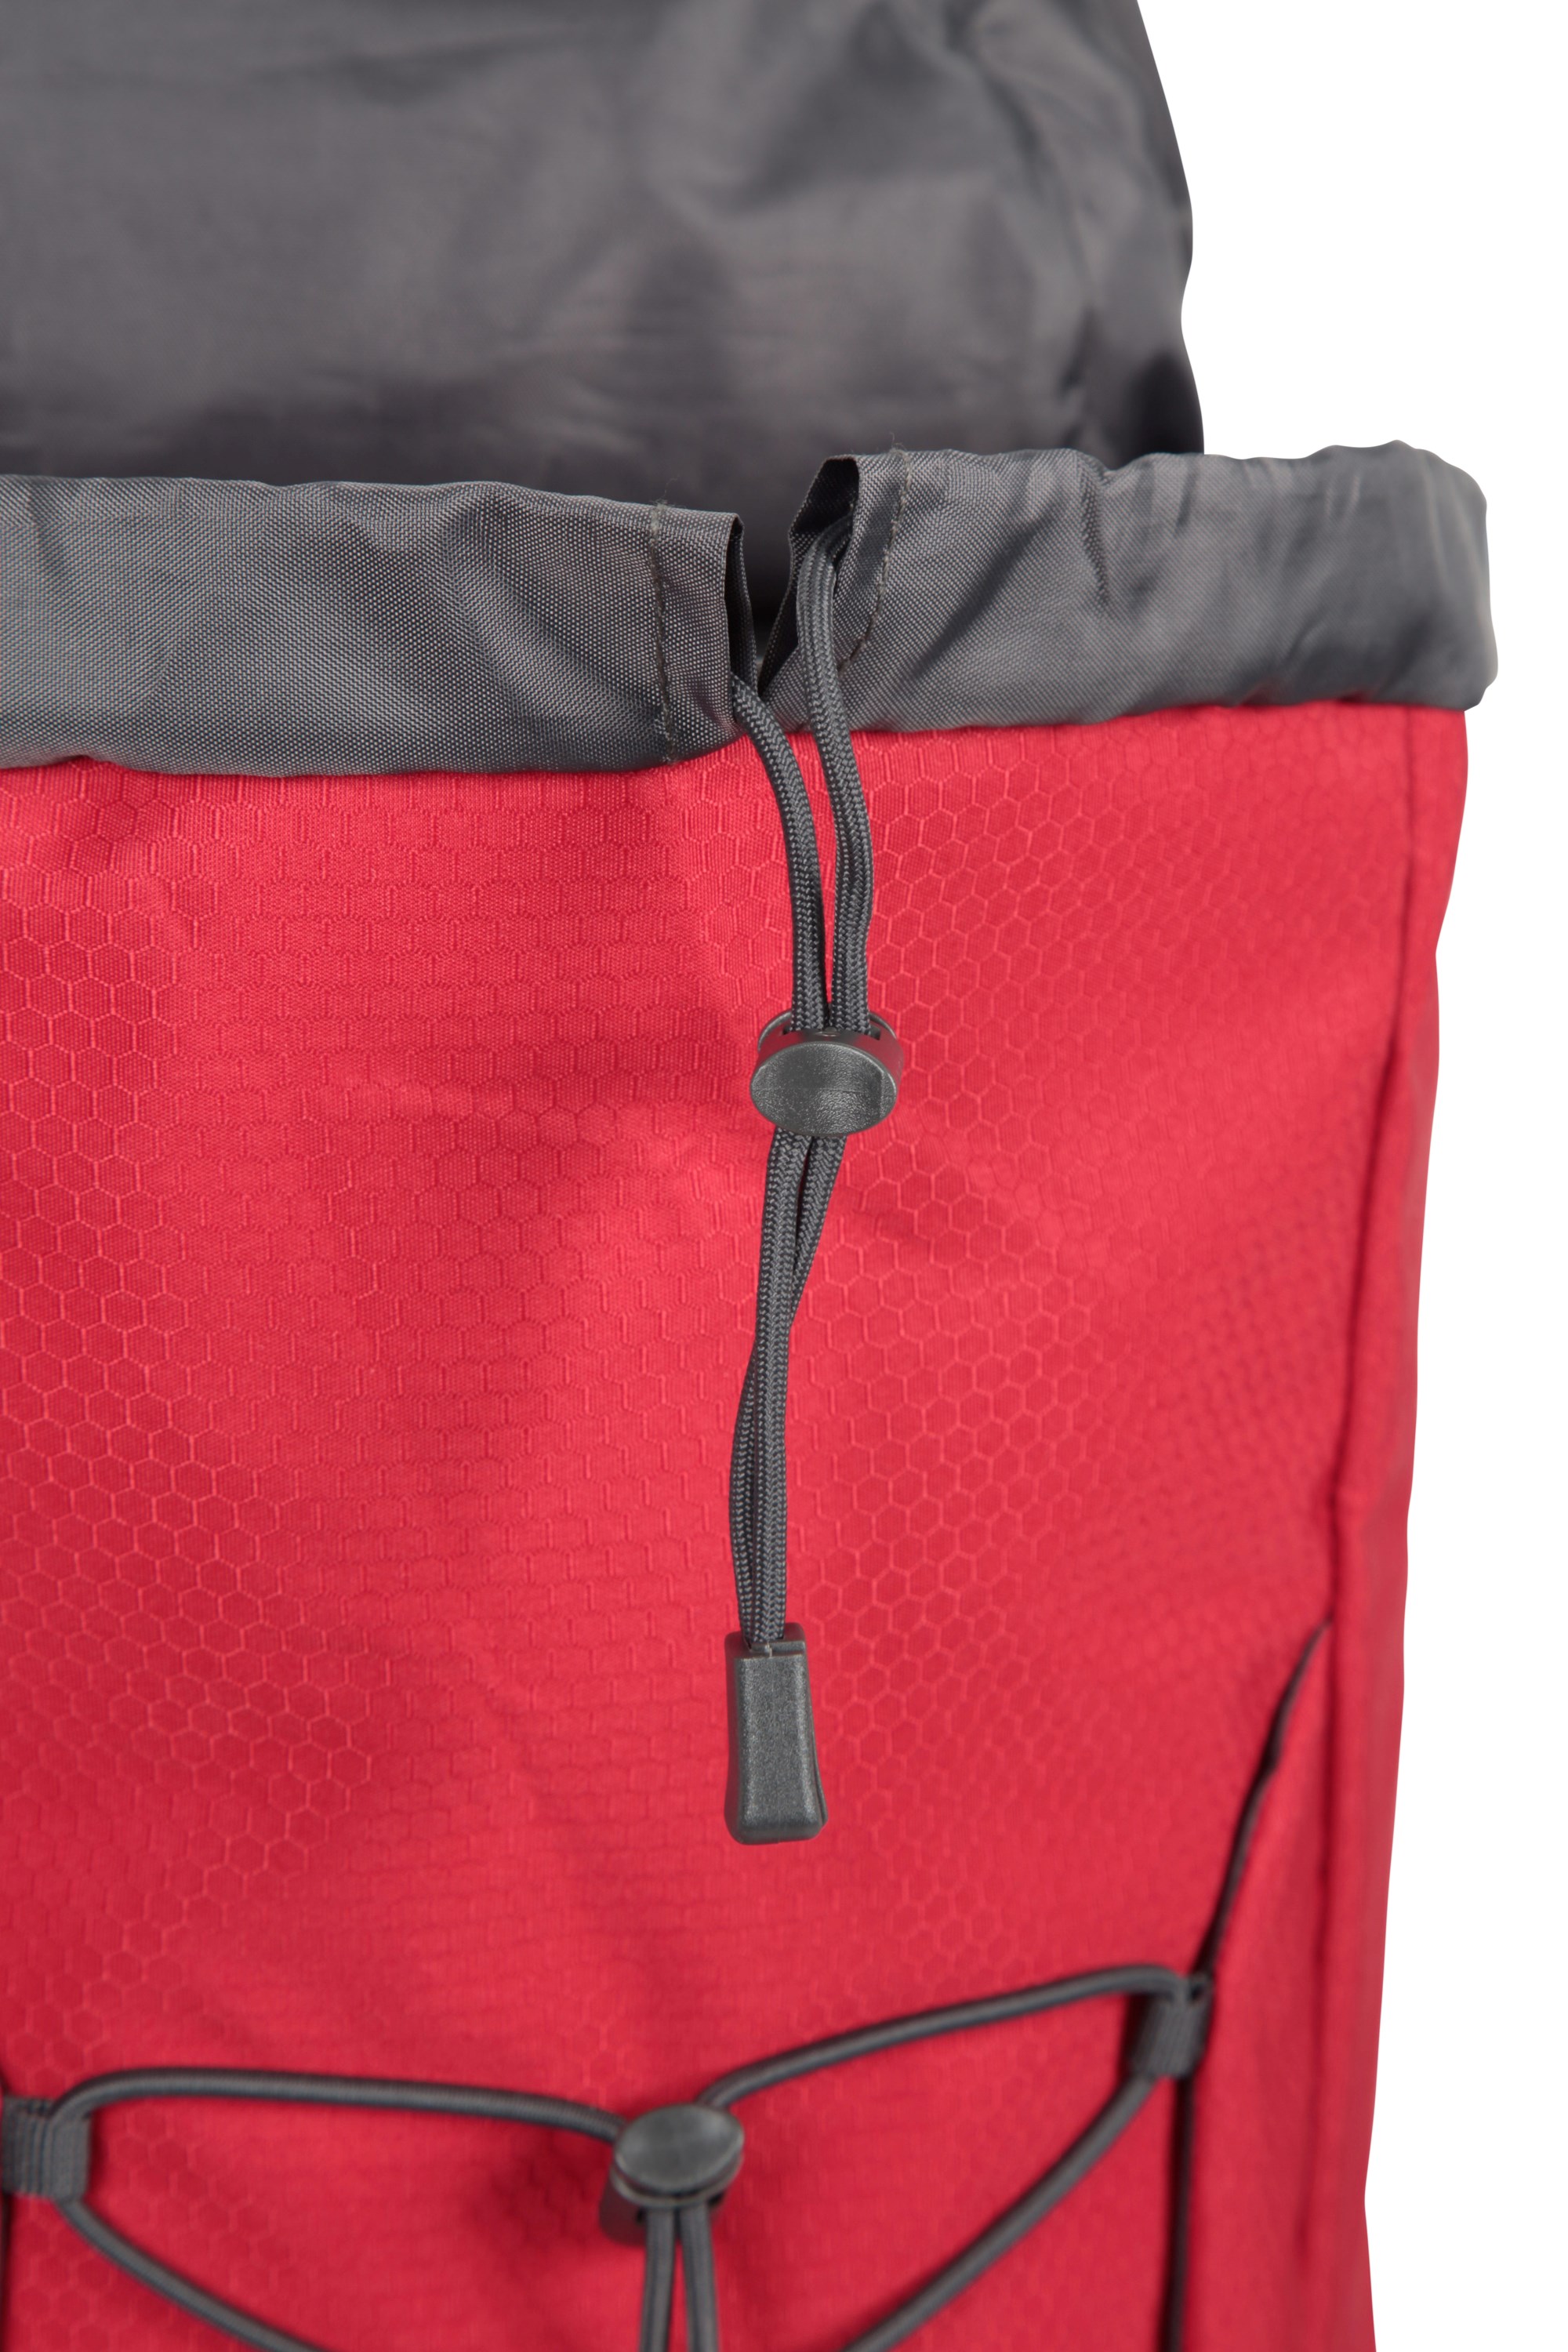 Venture 30L Backpack